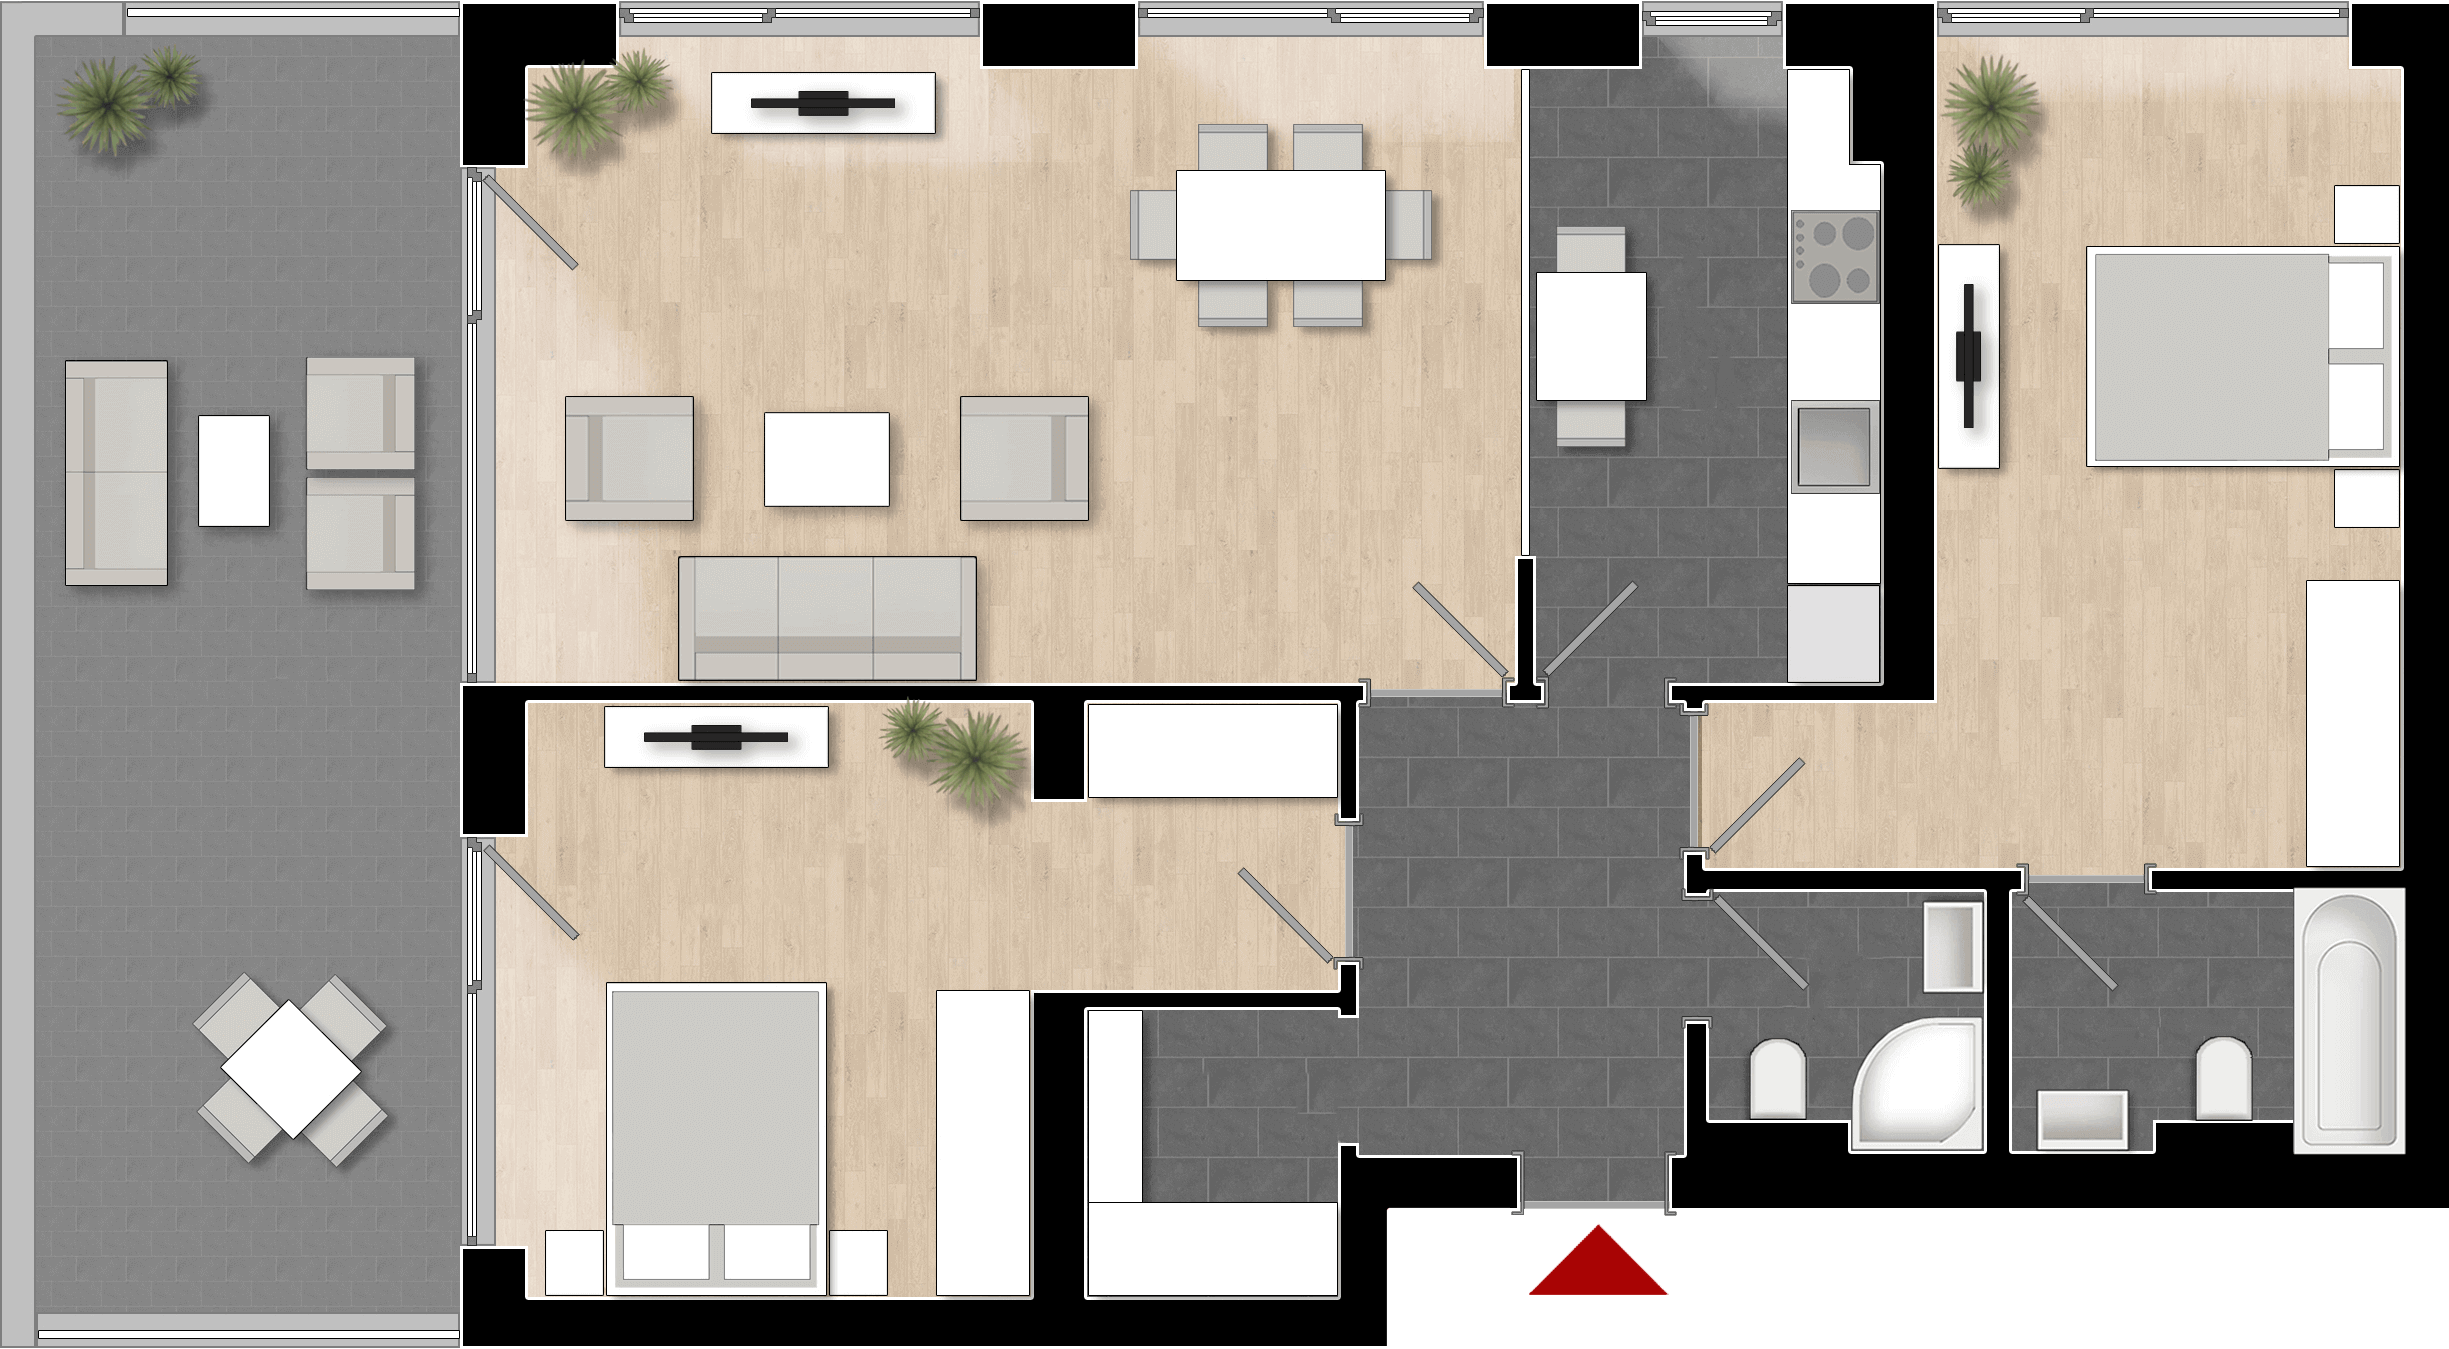  Apartament 903, Tip de apartament 3B cu 3 camere 